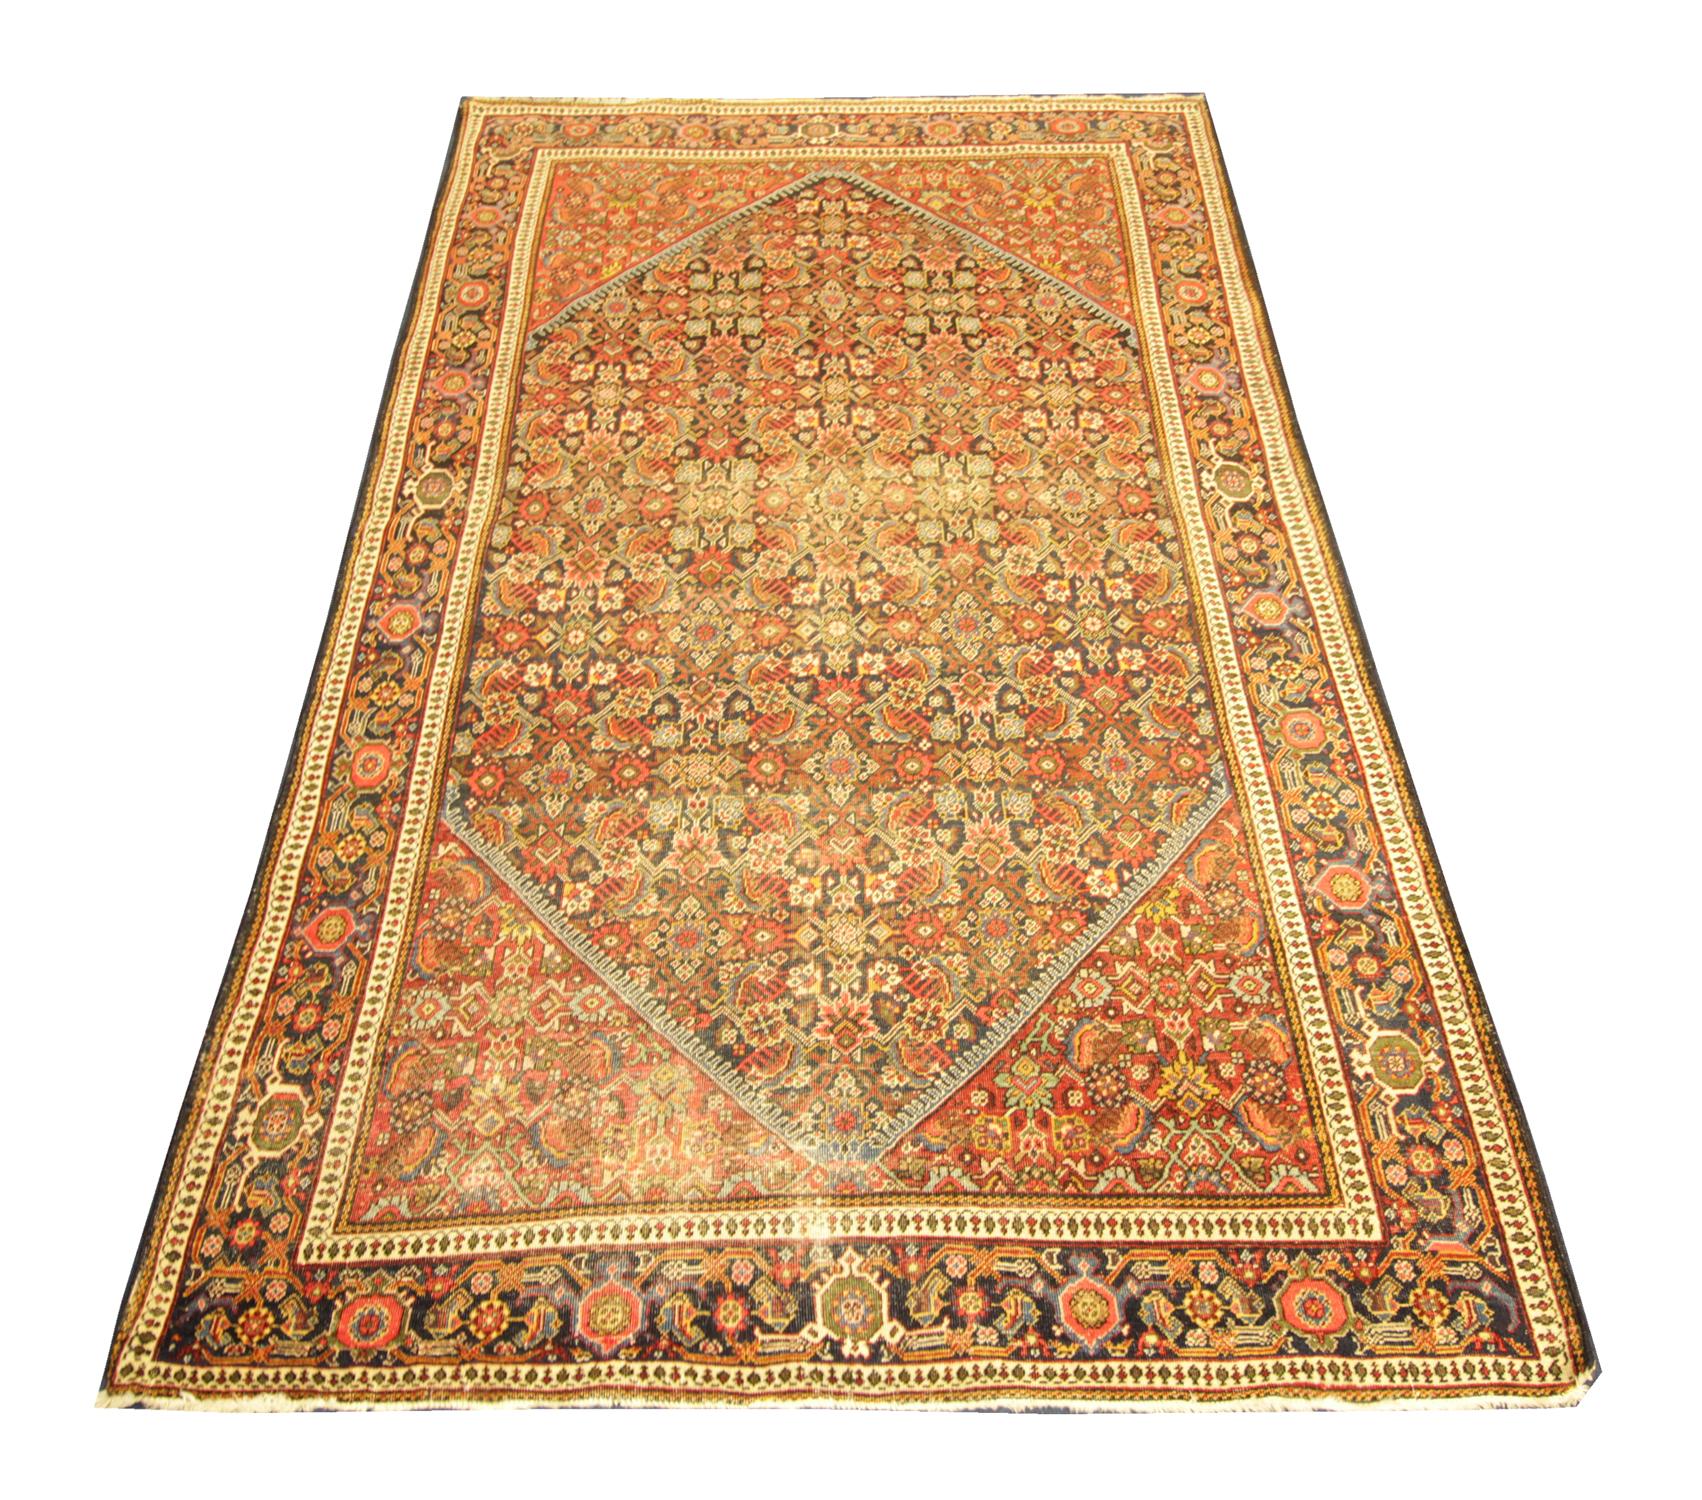 Dieser luxuriöse, quadratische Teppich wurde in Aserbaidschan von Hand gewebt und weist ein Allover-Muster auf, das auf einem braunen Hintergrund mit roten, orangen und cremefarbenen Akzenten gewebt wurde. Zart verziert mit komplizierten Mustern.